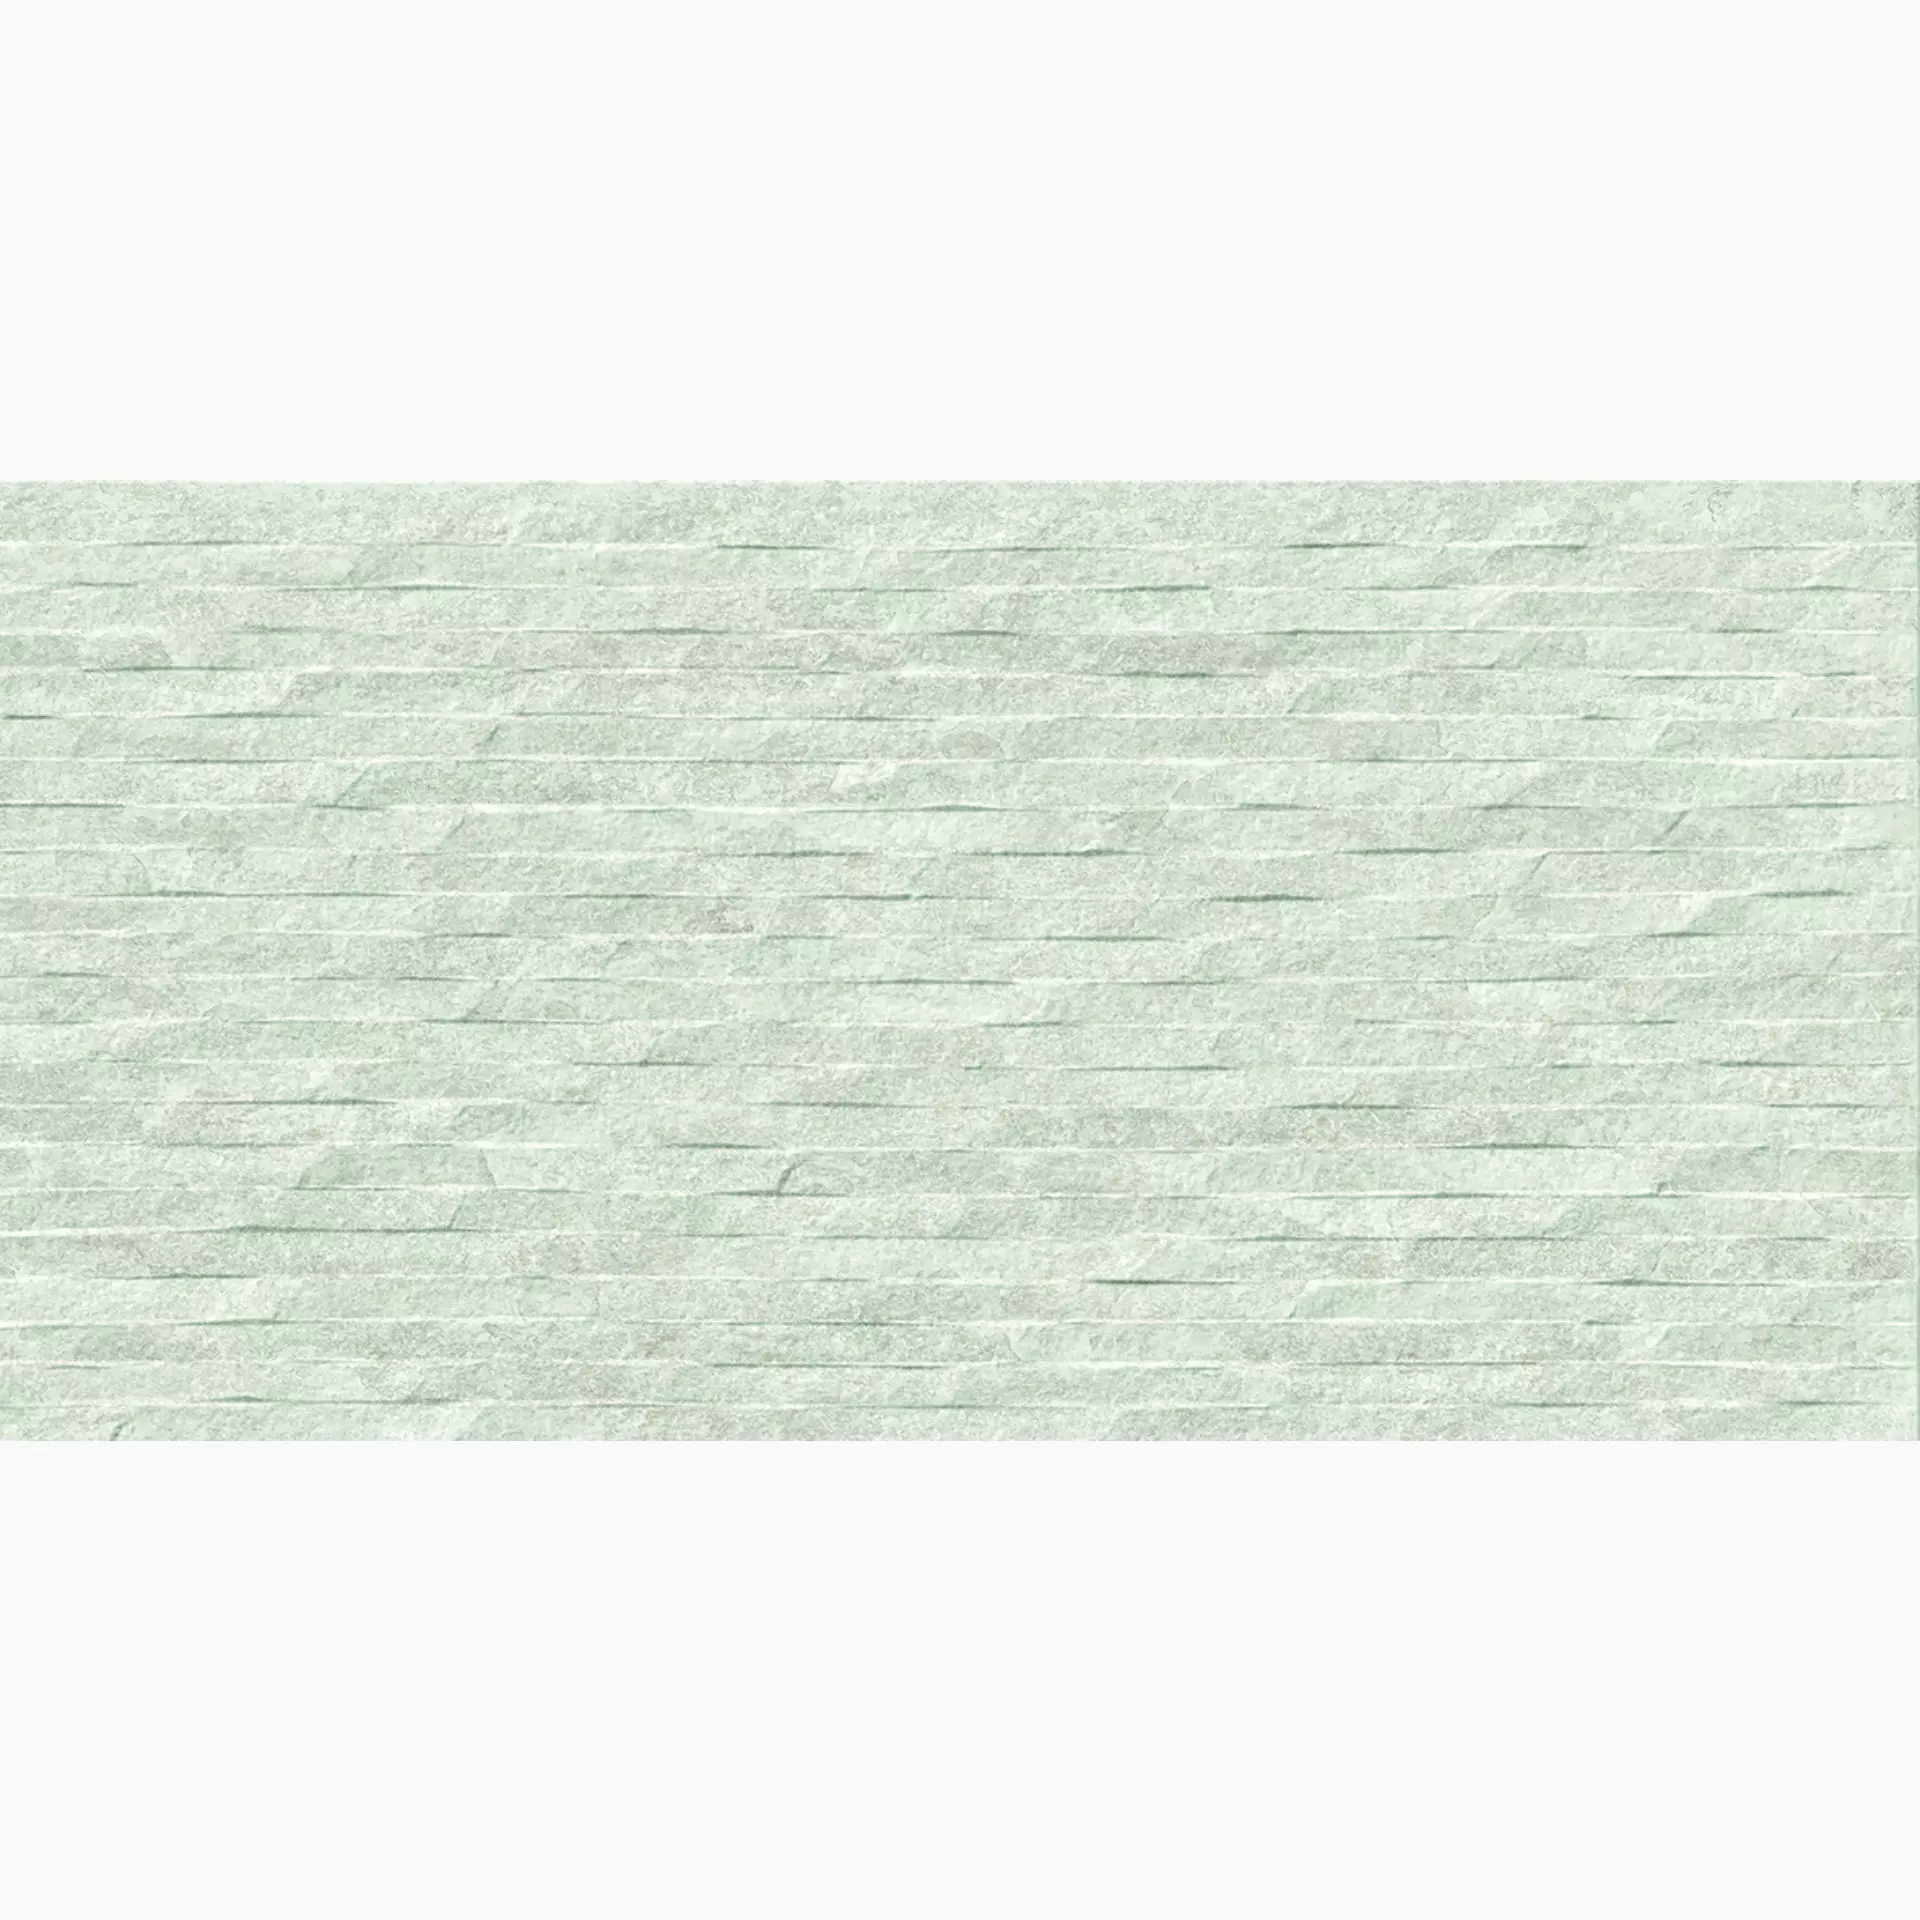 Ergon Oros Stone White Naturale White EKWC natur 30x60cm rektifiziert 9,5mm